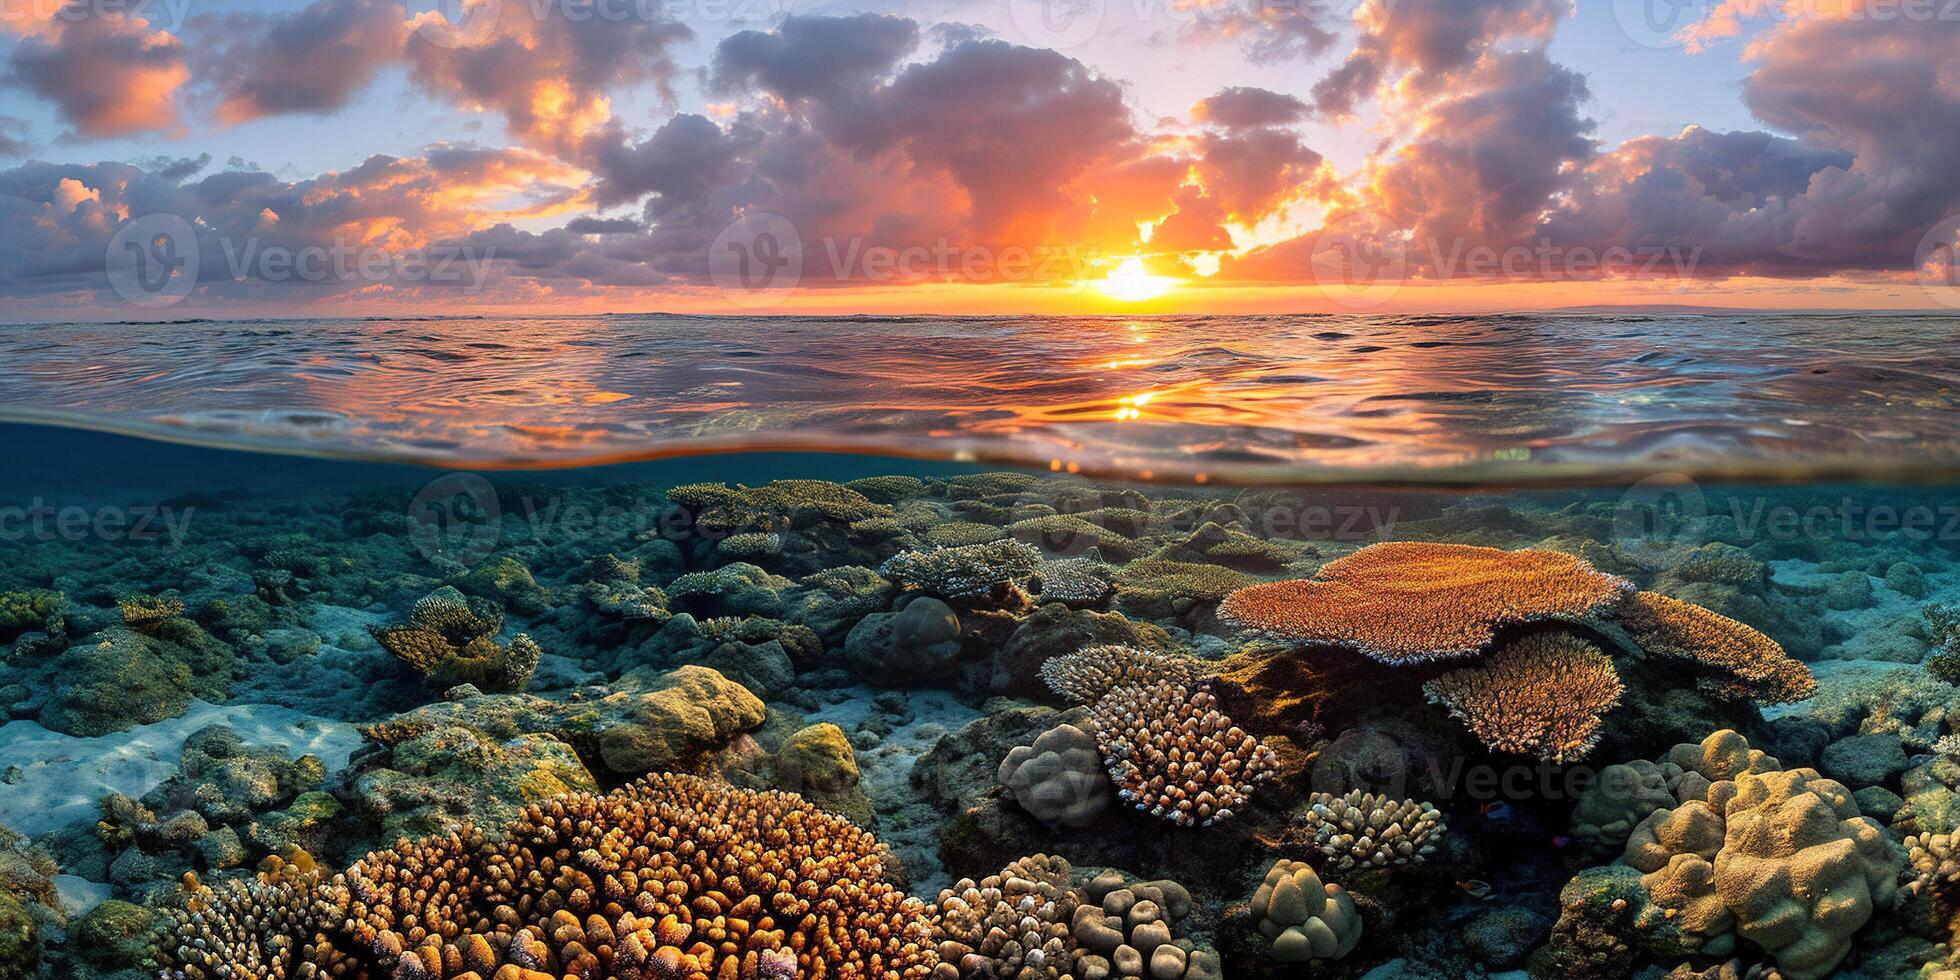 ai gegenereerd Super goed barrière rif Aan de kust van koninginneland, Australië zeegezicht. koraal marinier ecosysteem onderwater- spleet visie, gouden uur zonsondergang avond lucht behang achtergrond foto